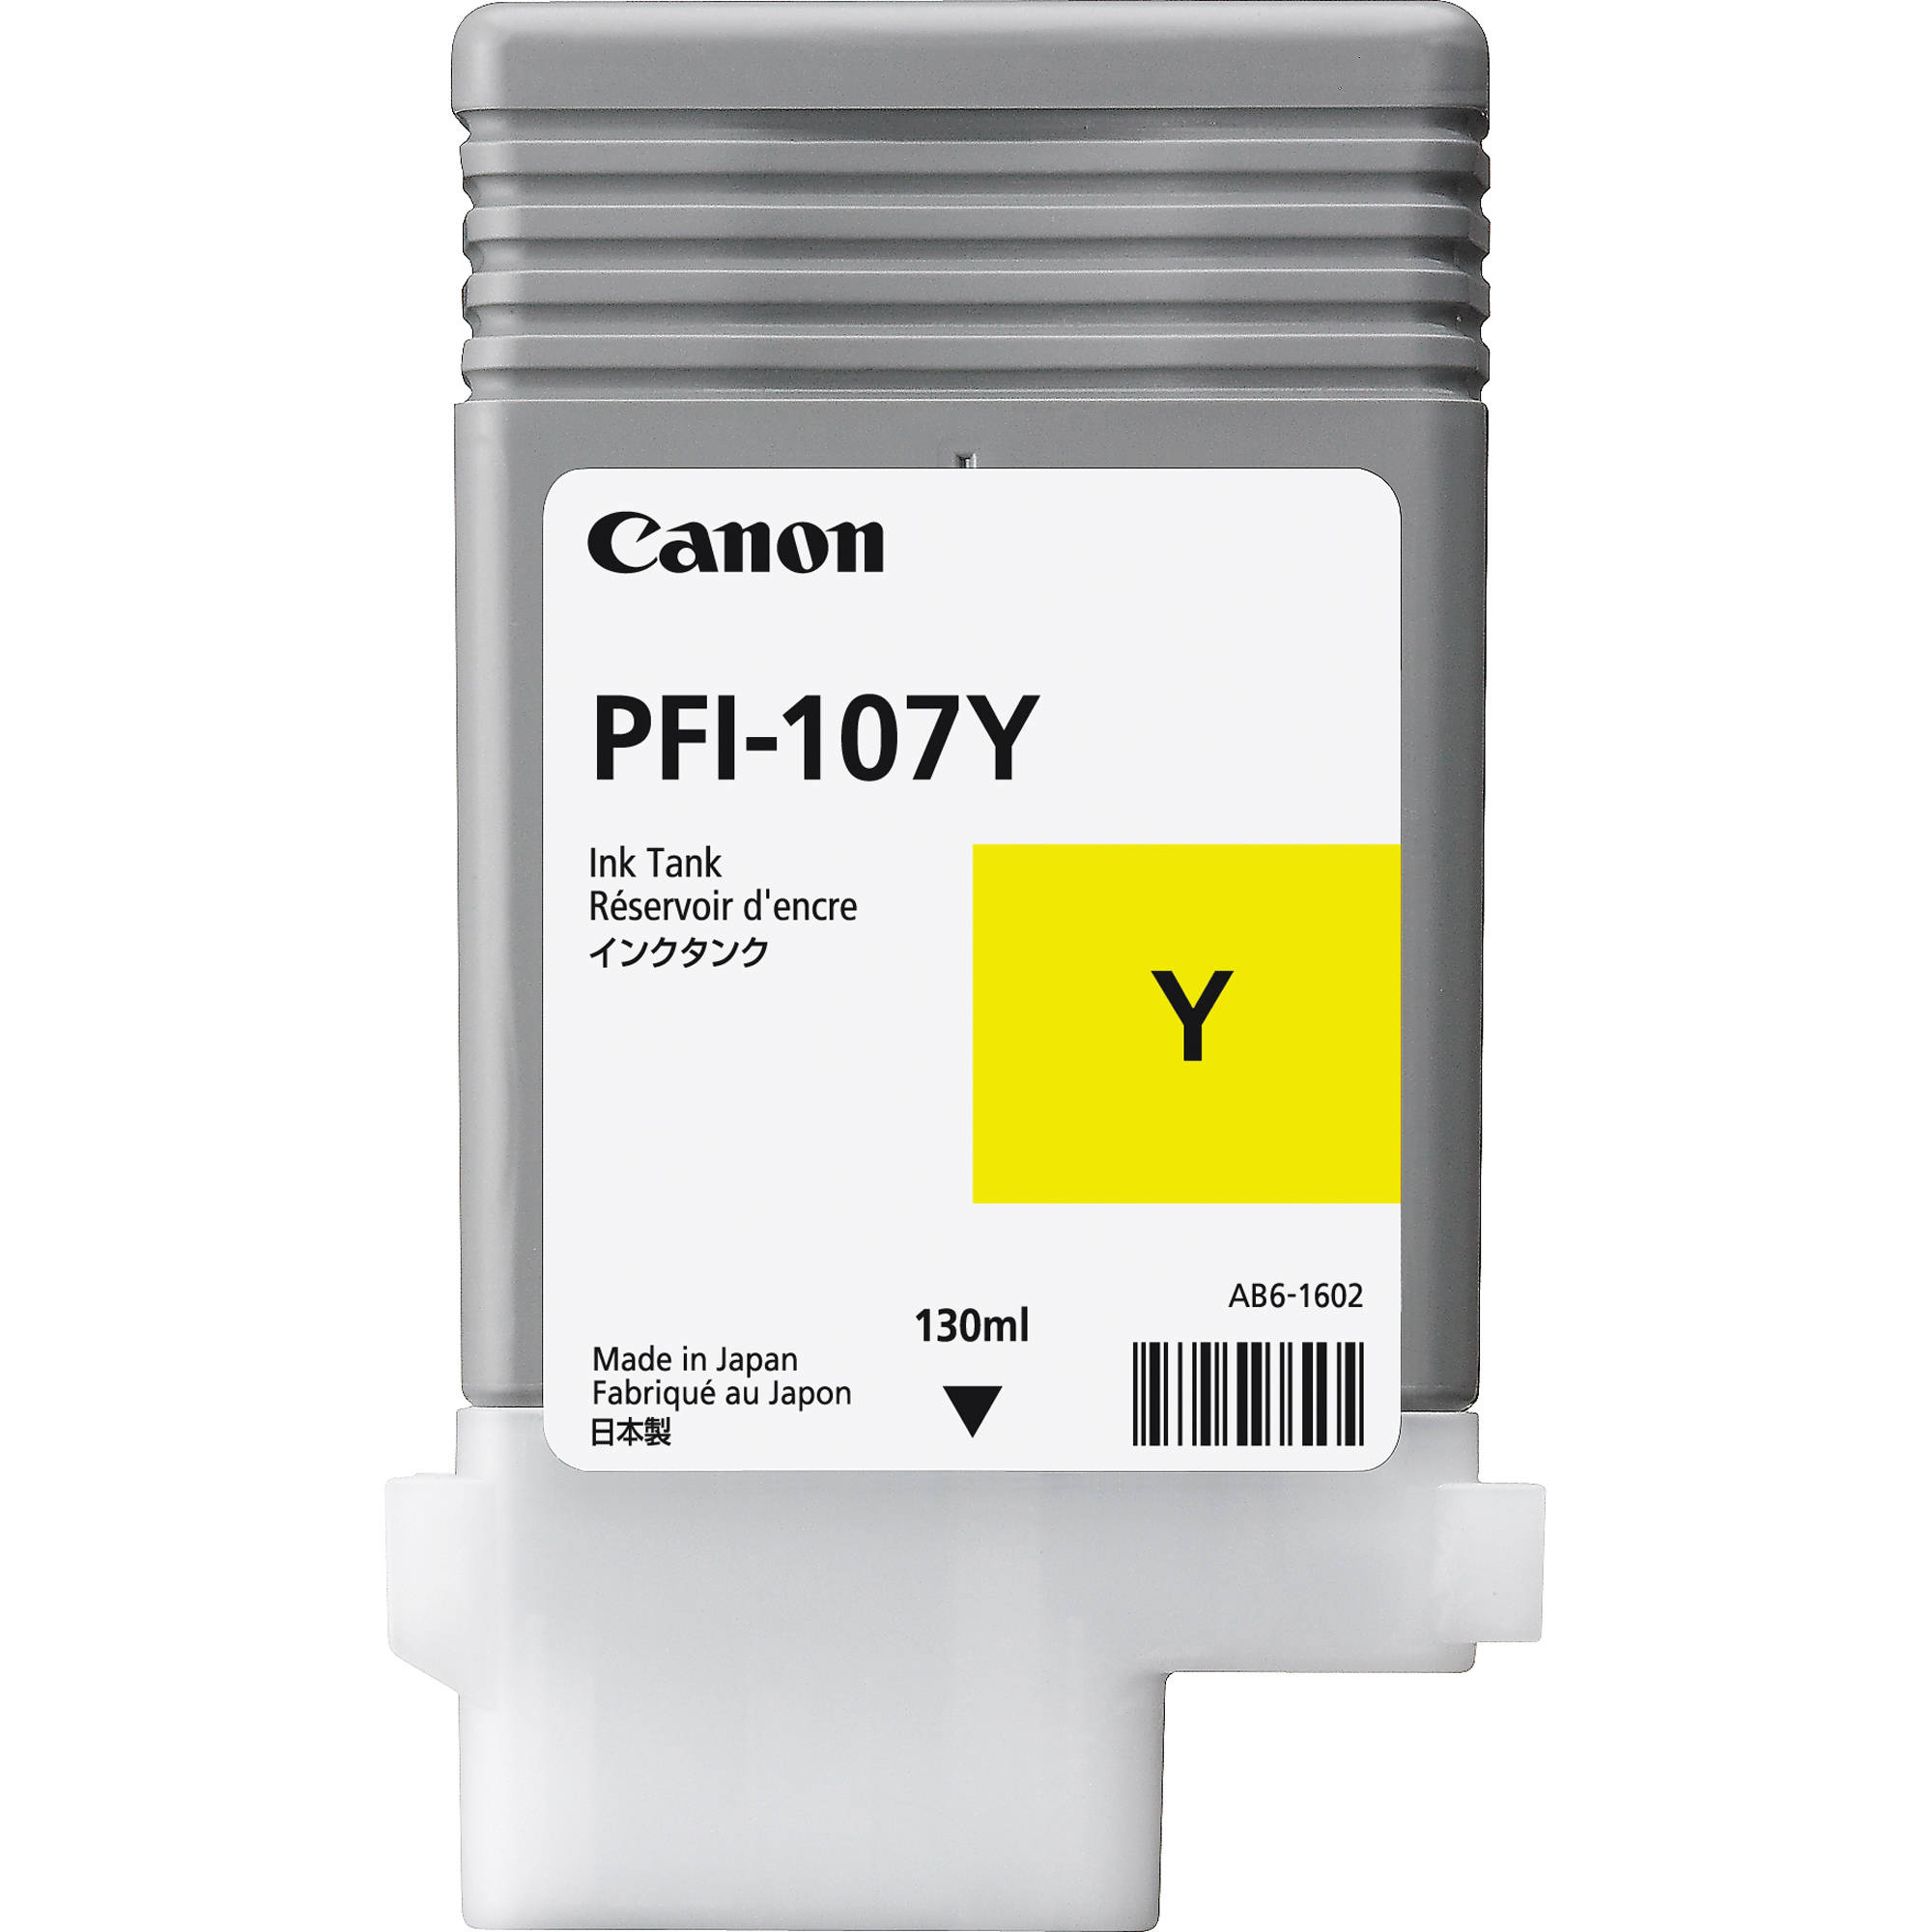 Original Canon PFI-107Y Yellow Ink Cartridge (6708B001AA)